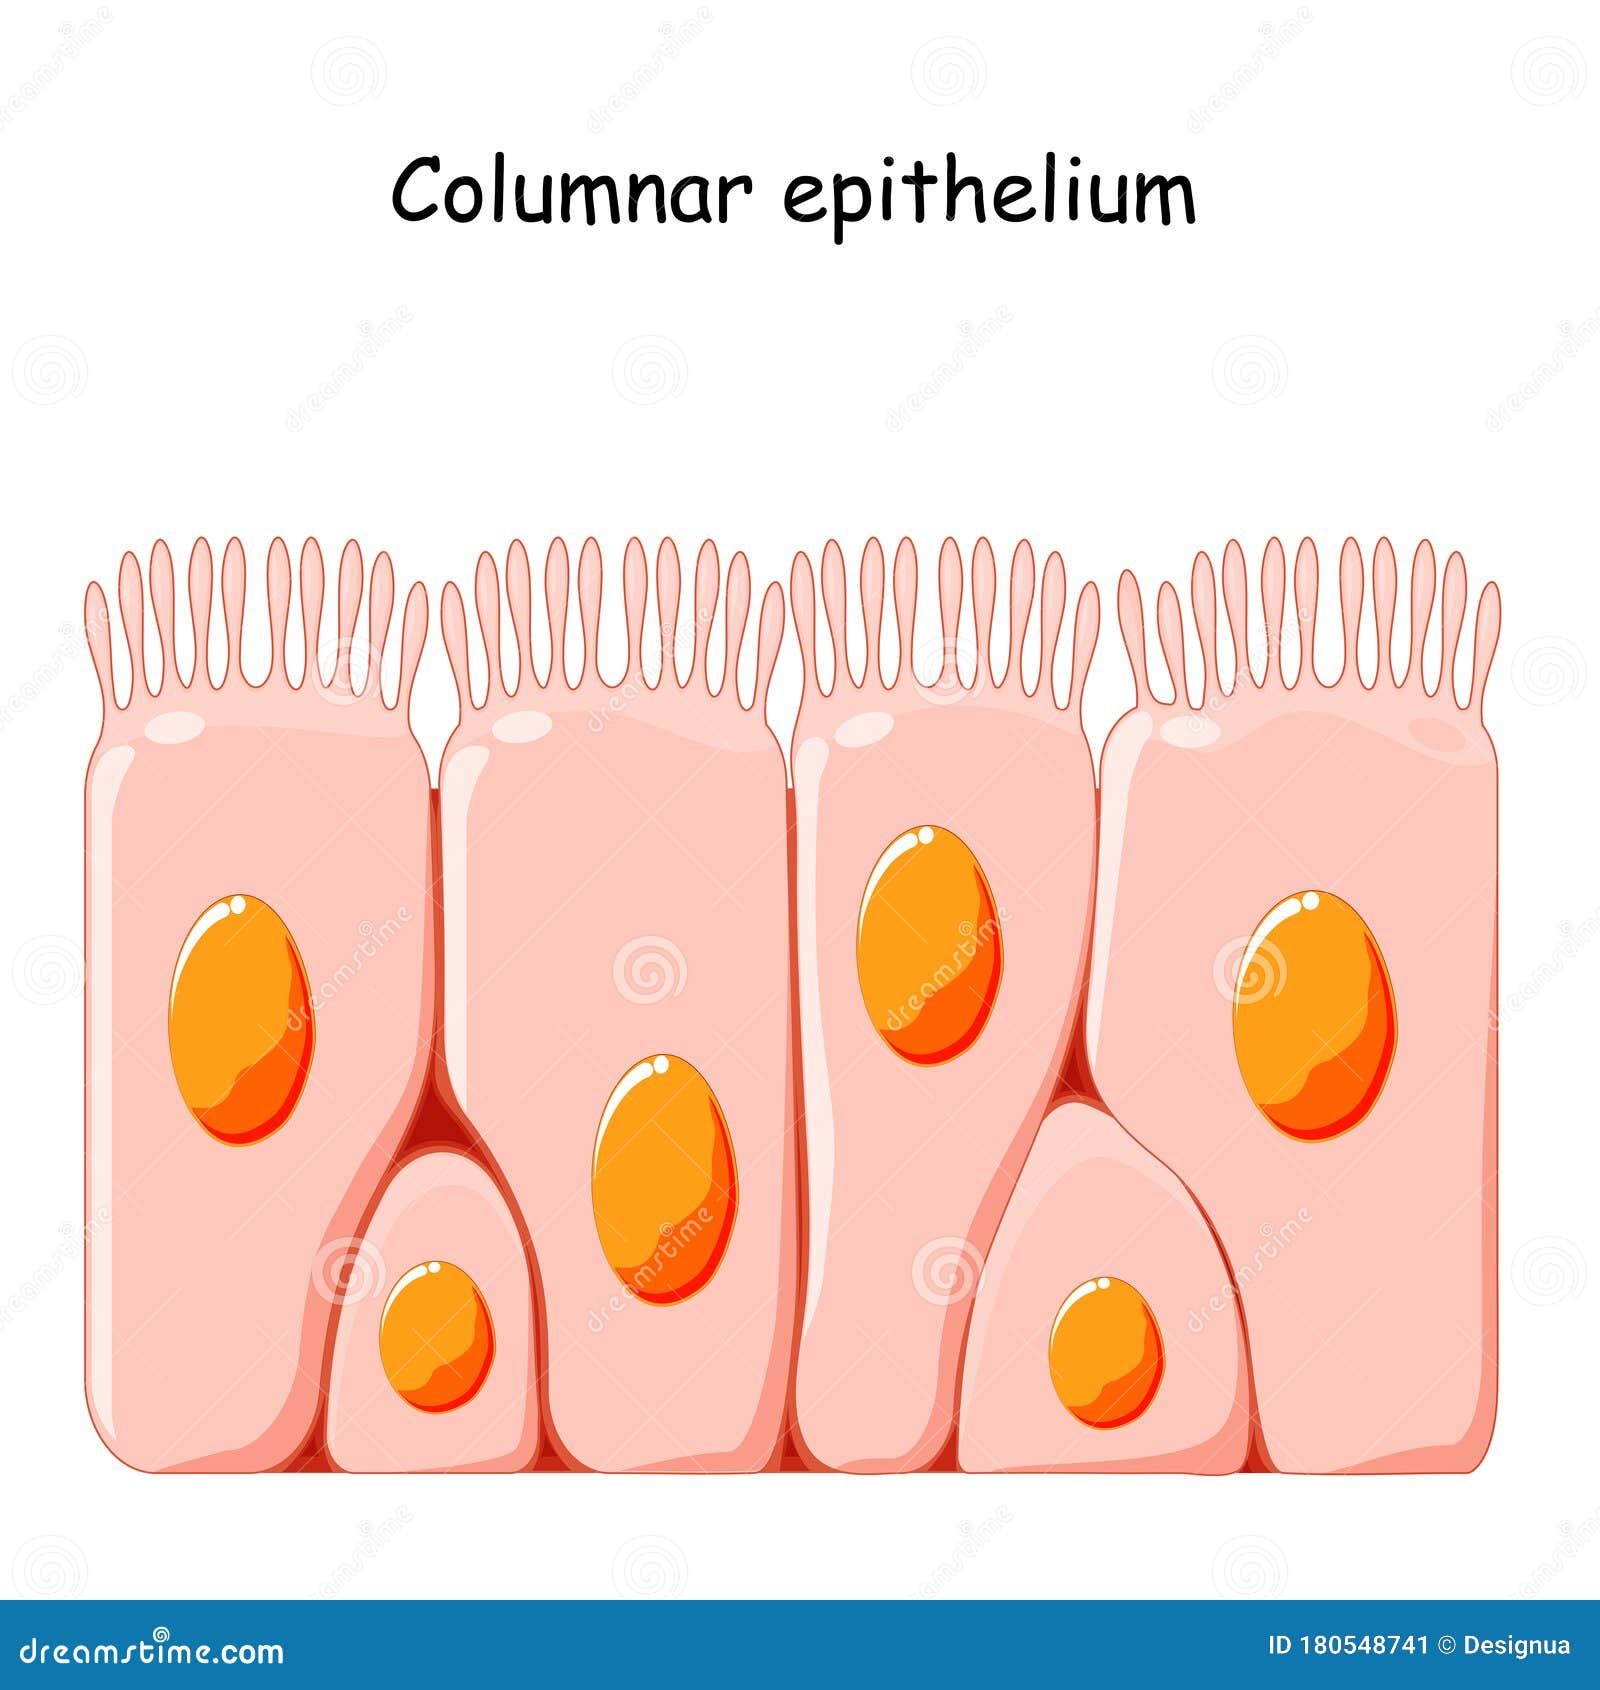 ciliated columnar epithelium